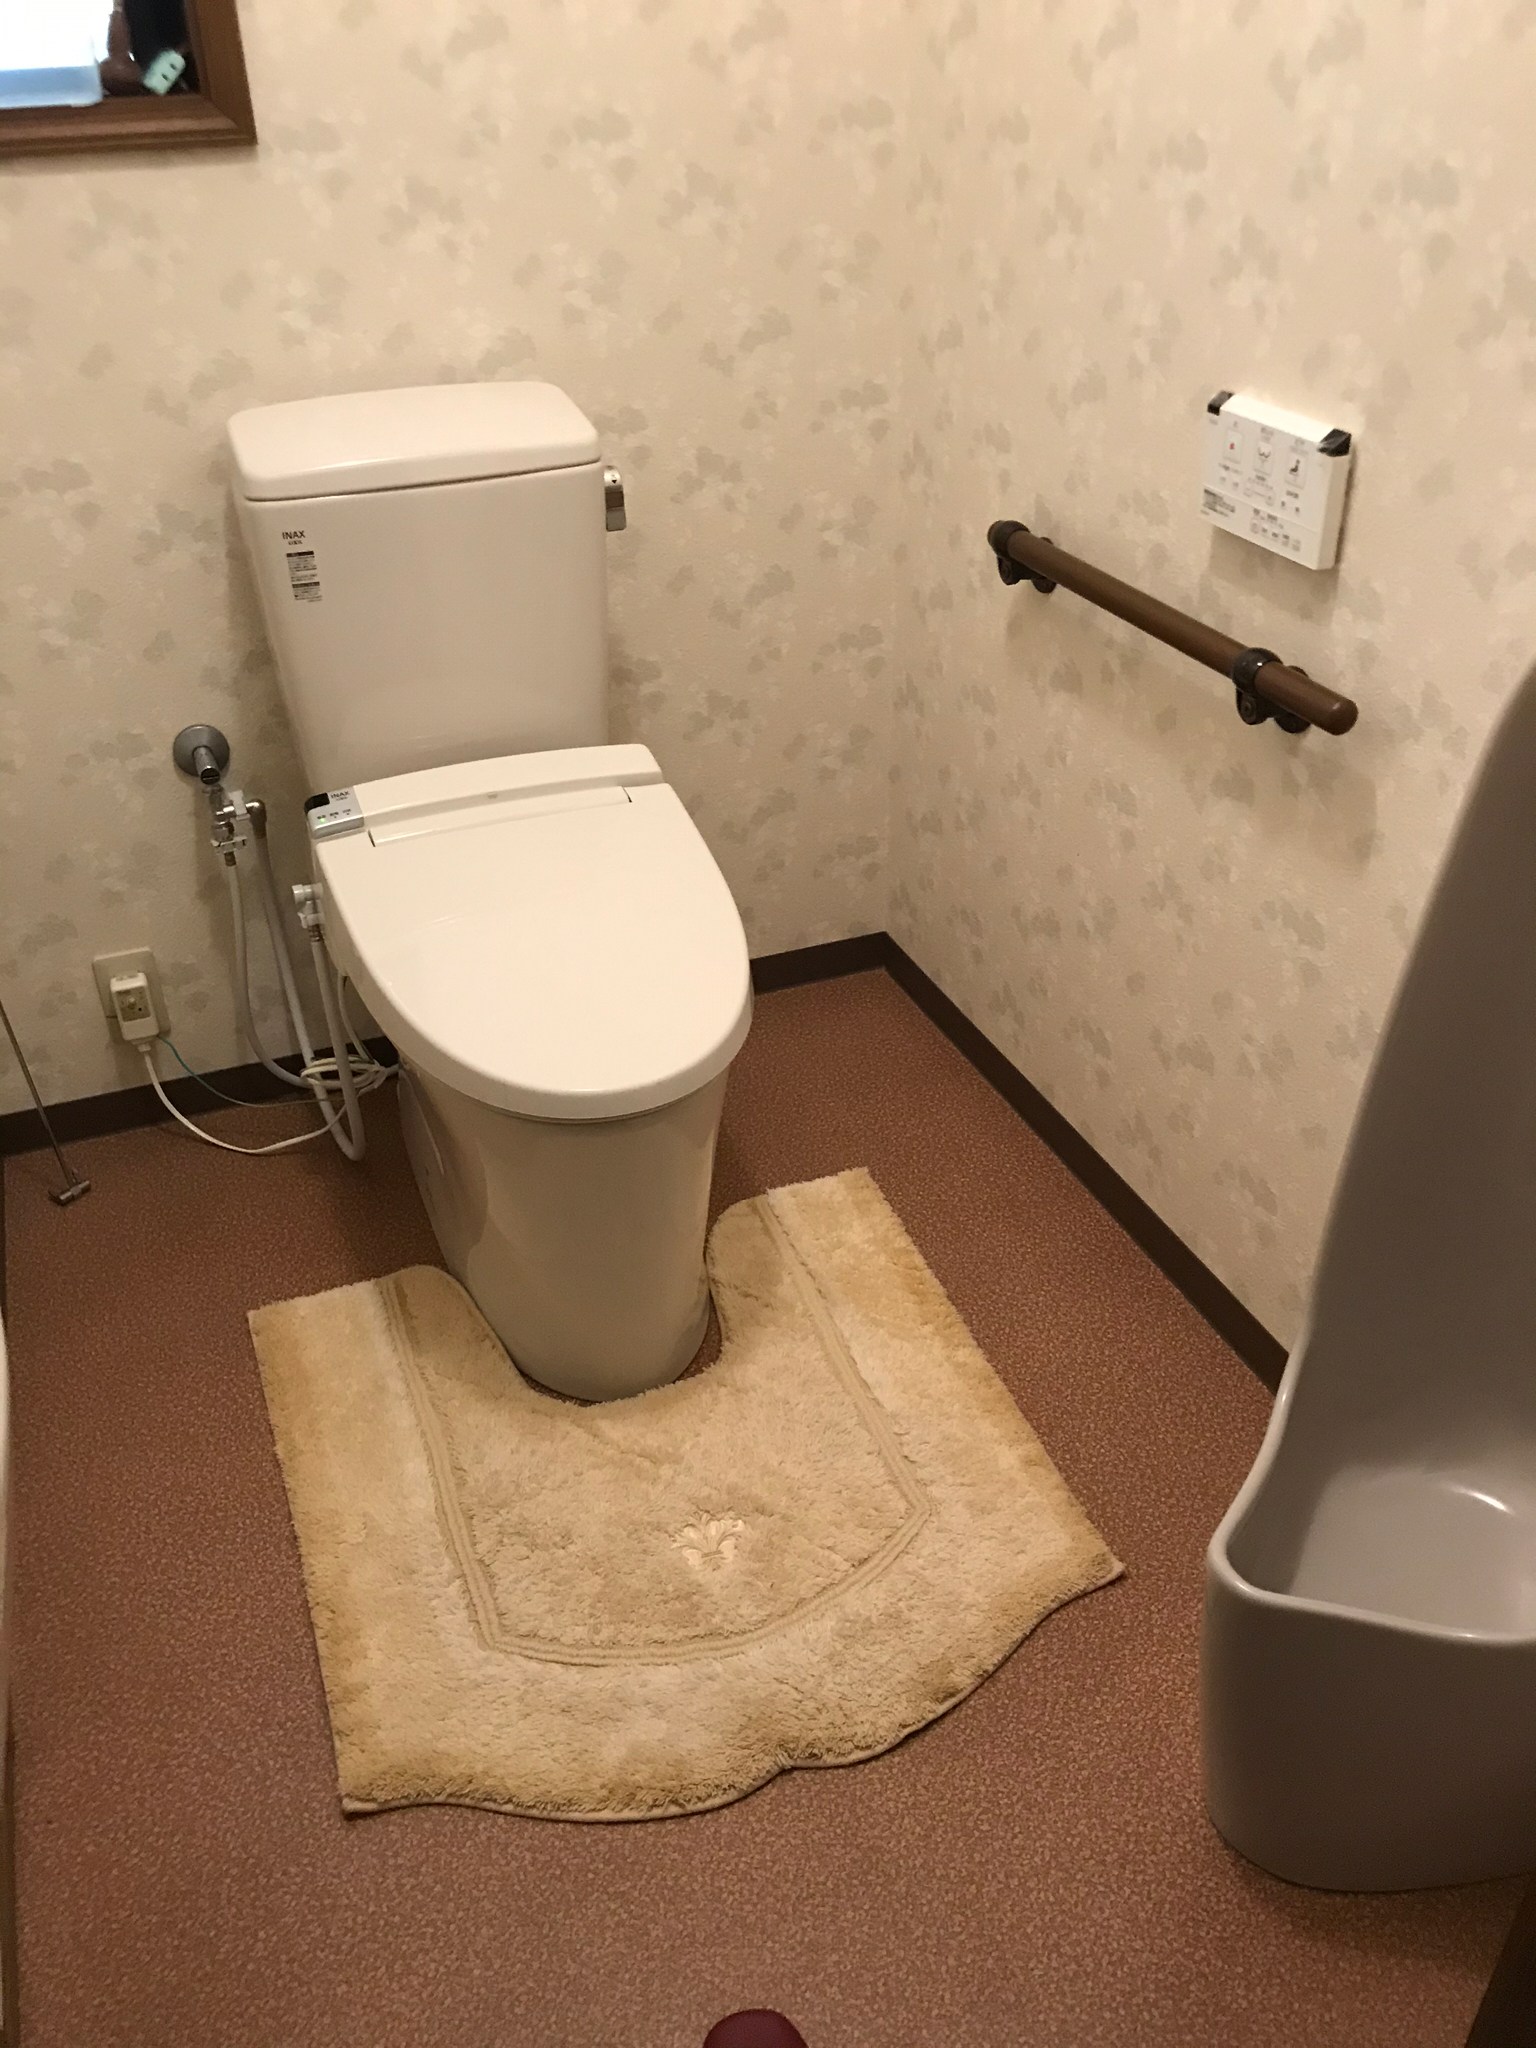 【東京都世田谷区赤堤】トイレとウォシュレットの両方から水漏れ。トイレ交換。 【公式】水漏れ・つまりを修理するなら